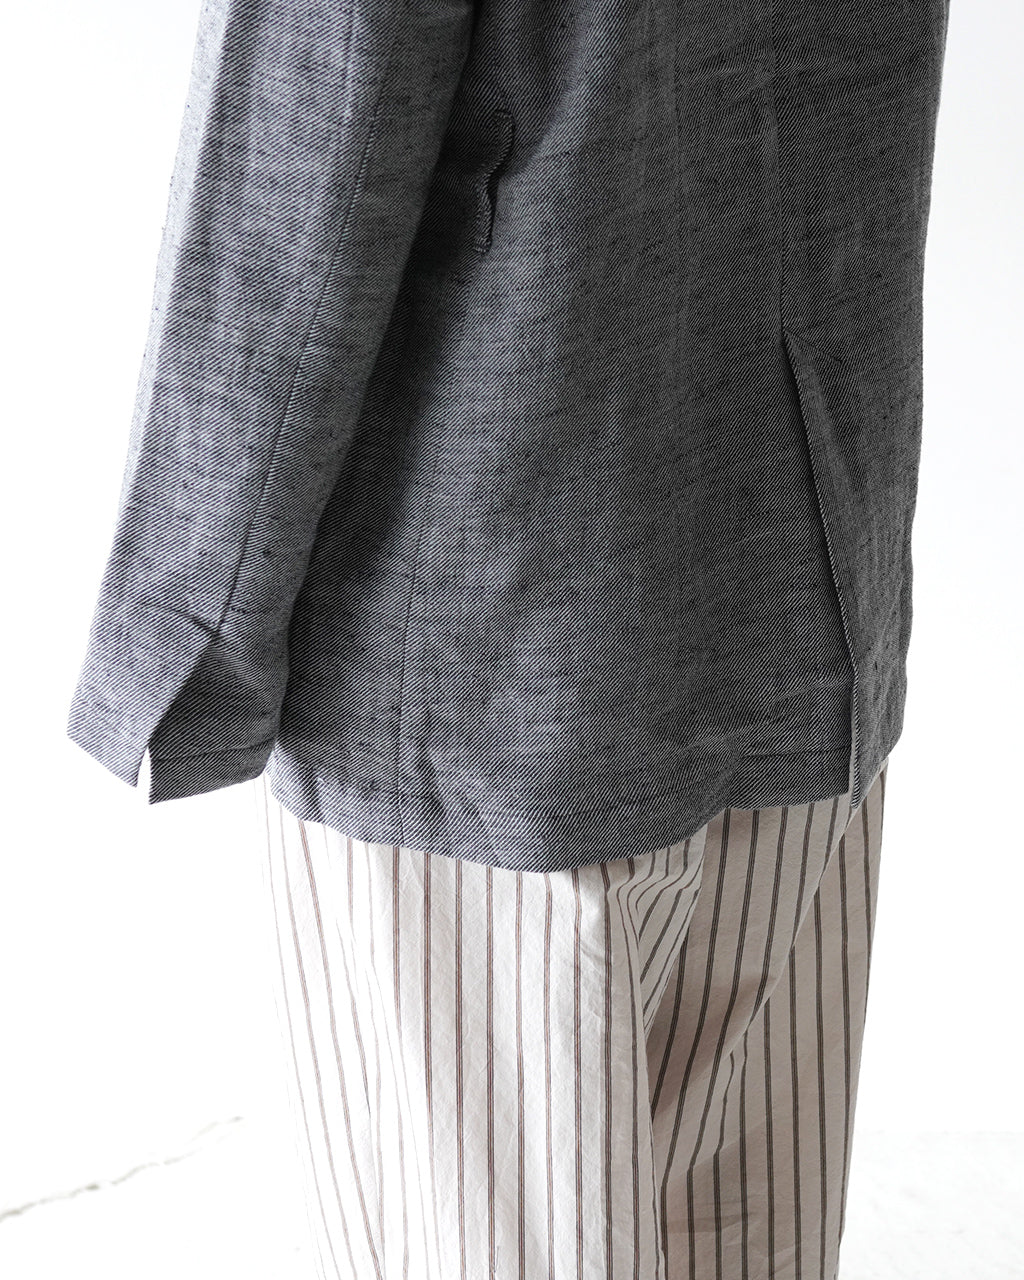 sana  サナ フロント フライ ジャケット(リネン ツイル) front fry jacket (linen twill) レディース satp-0706【送料無料】